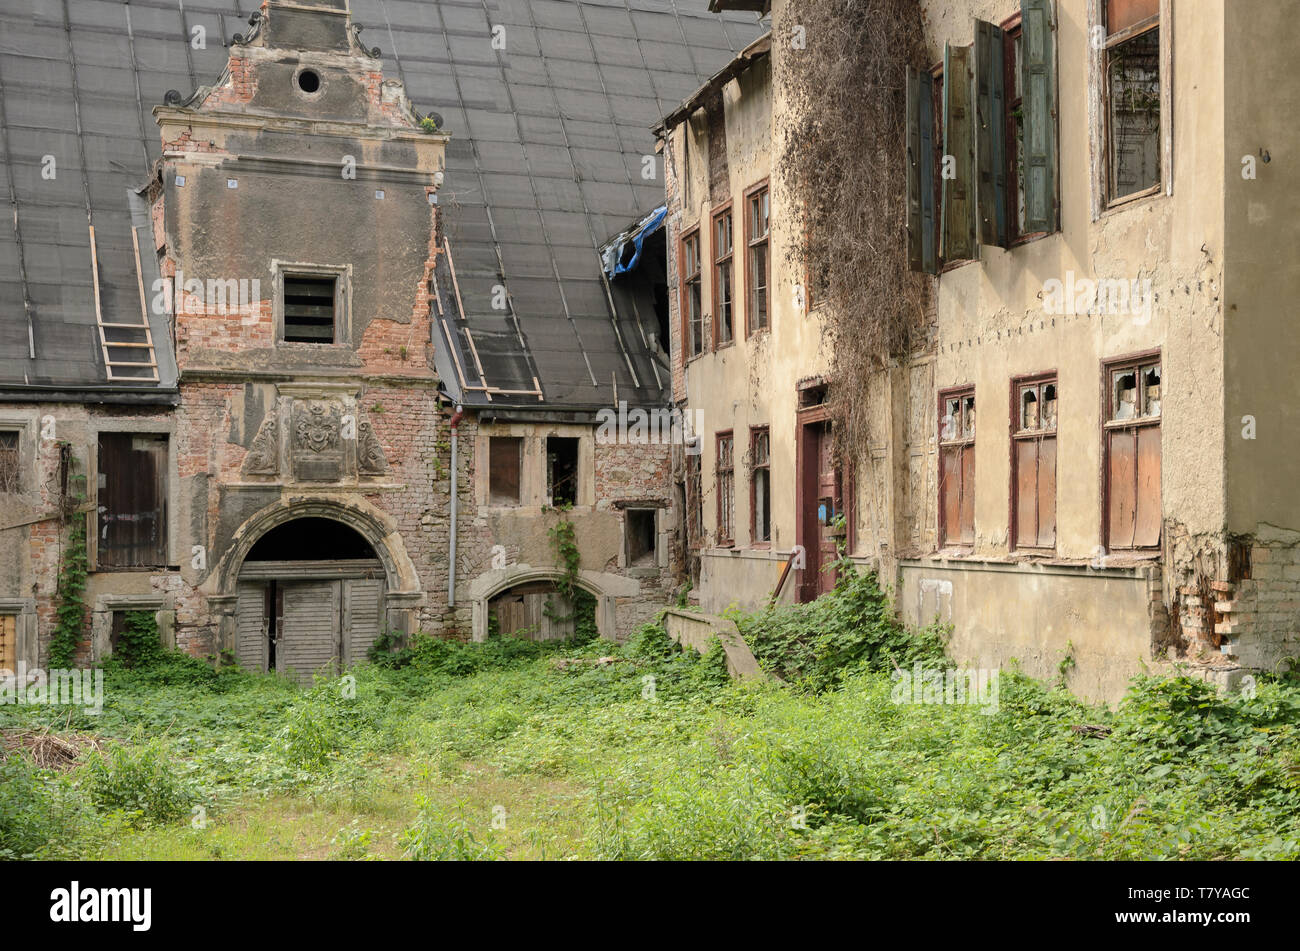 Ruine am Schlossberg, Halle, Sachsen-Anhalt, Deutschland Stock Photo